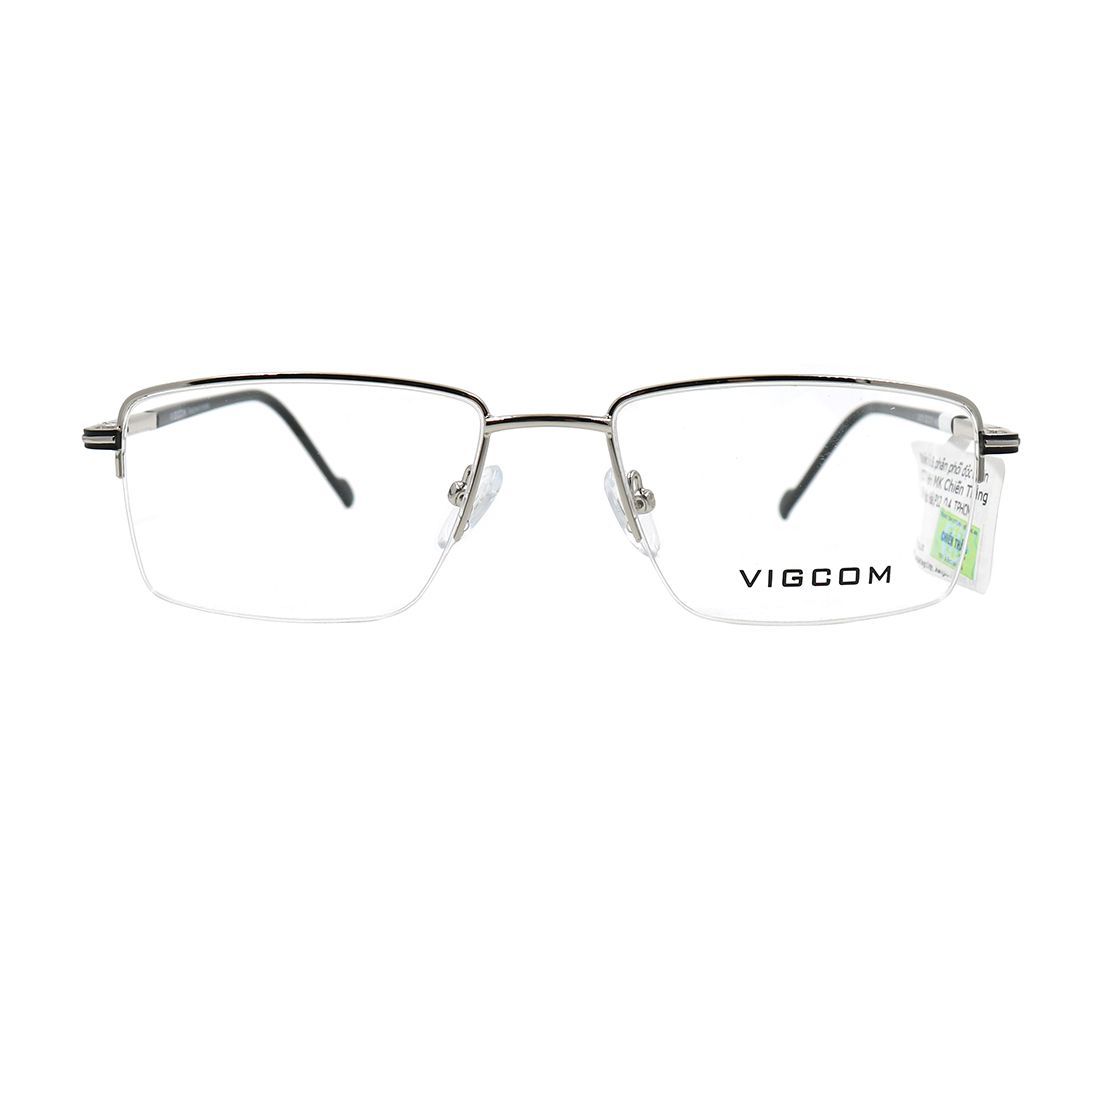  Gọng kính Vigcom VG2018 C2 